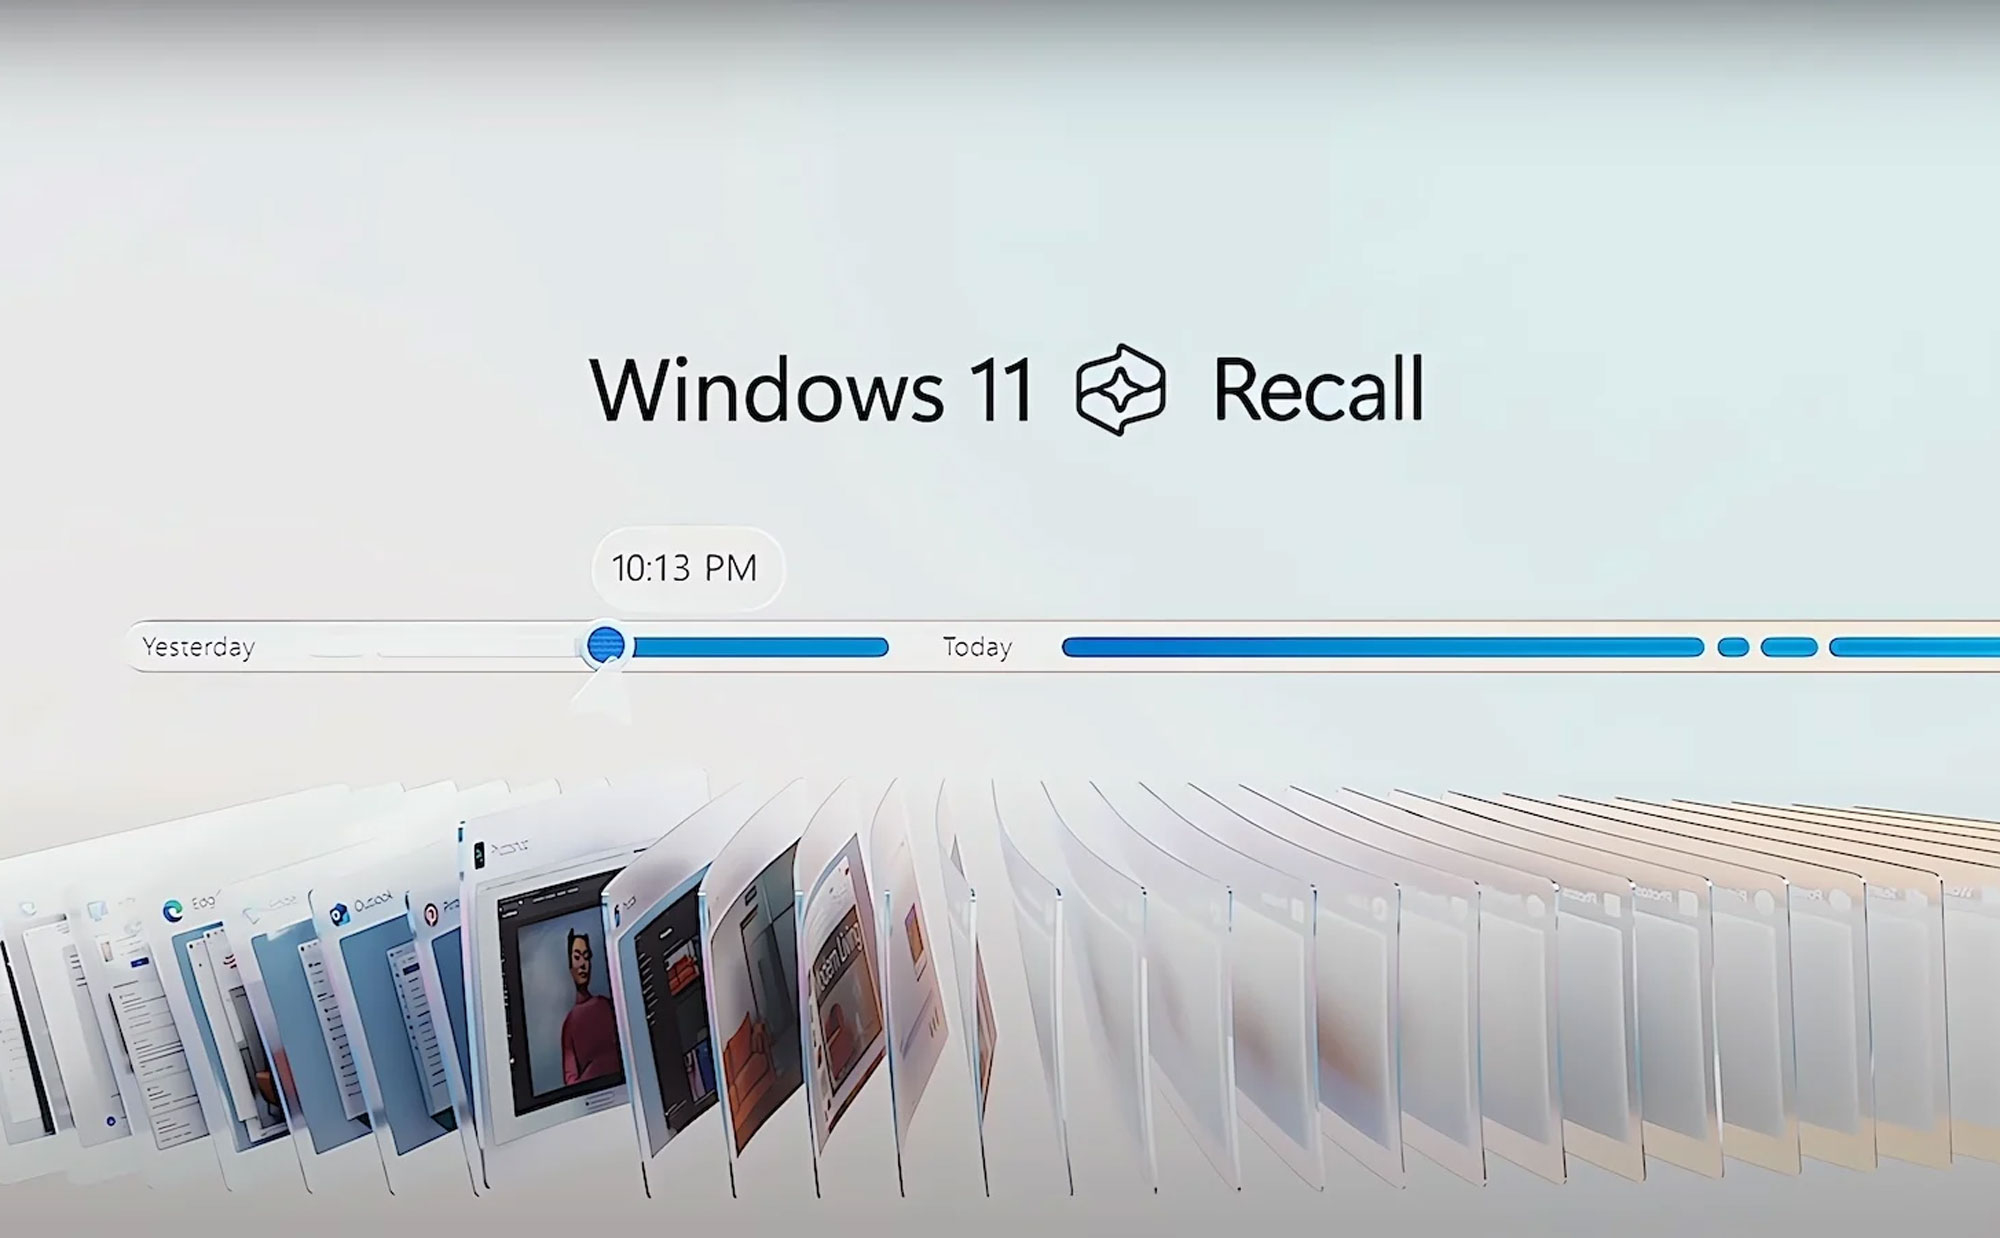 Windows Recall: máy tính là trợ lý AI, lúc nào cũng "nhớ" cái mà người dùng nhìn trên màn hình